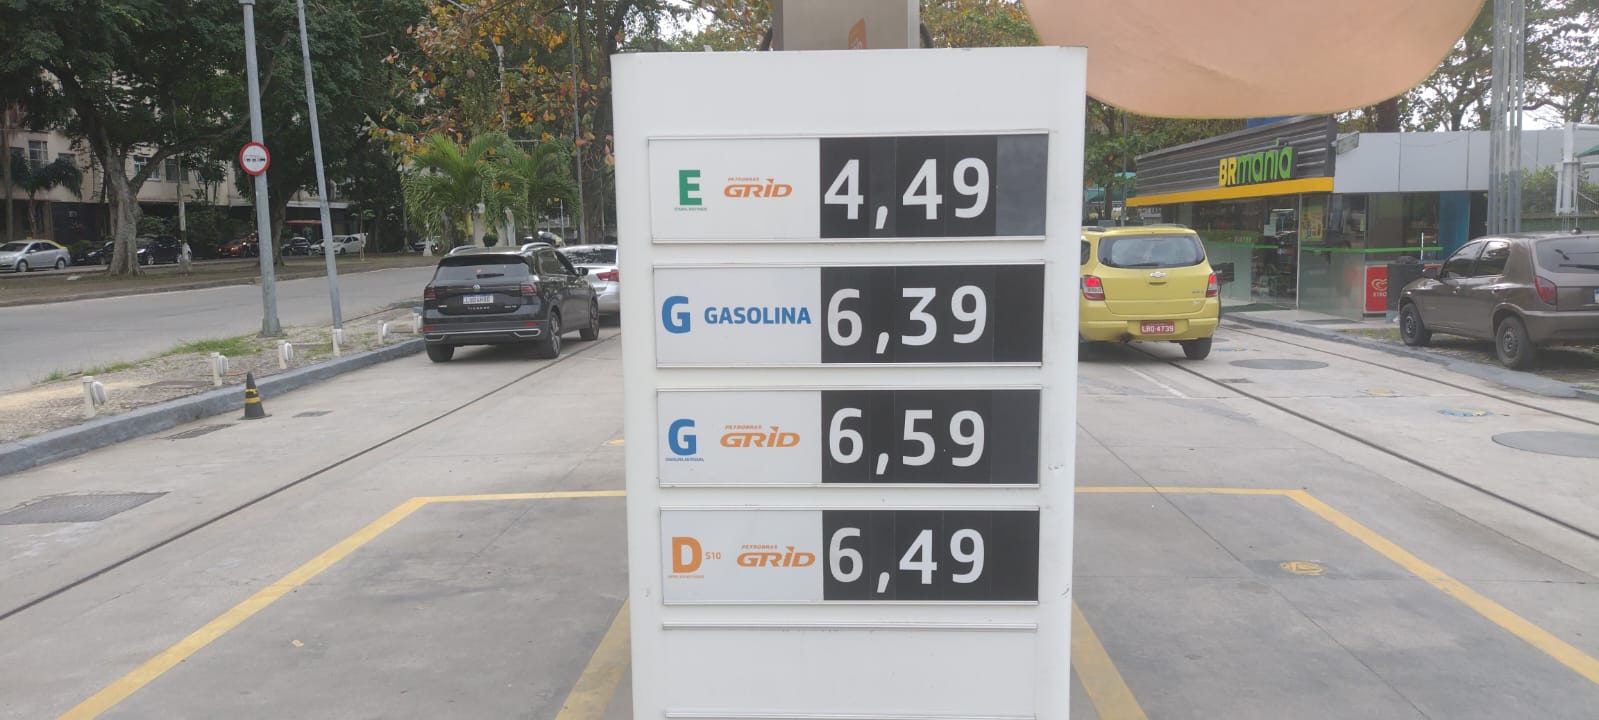 Gasolina fica mais cara em postos do Rio